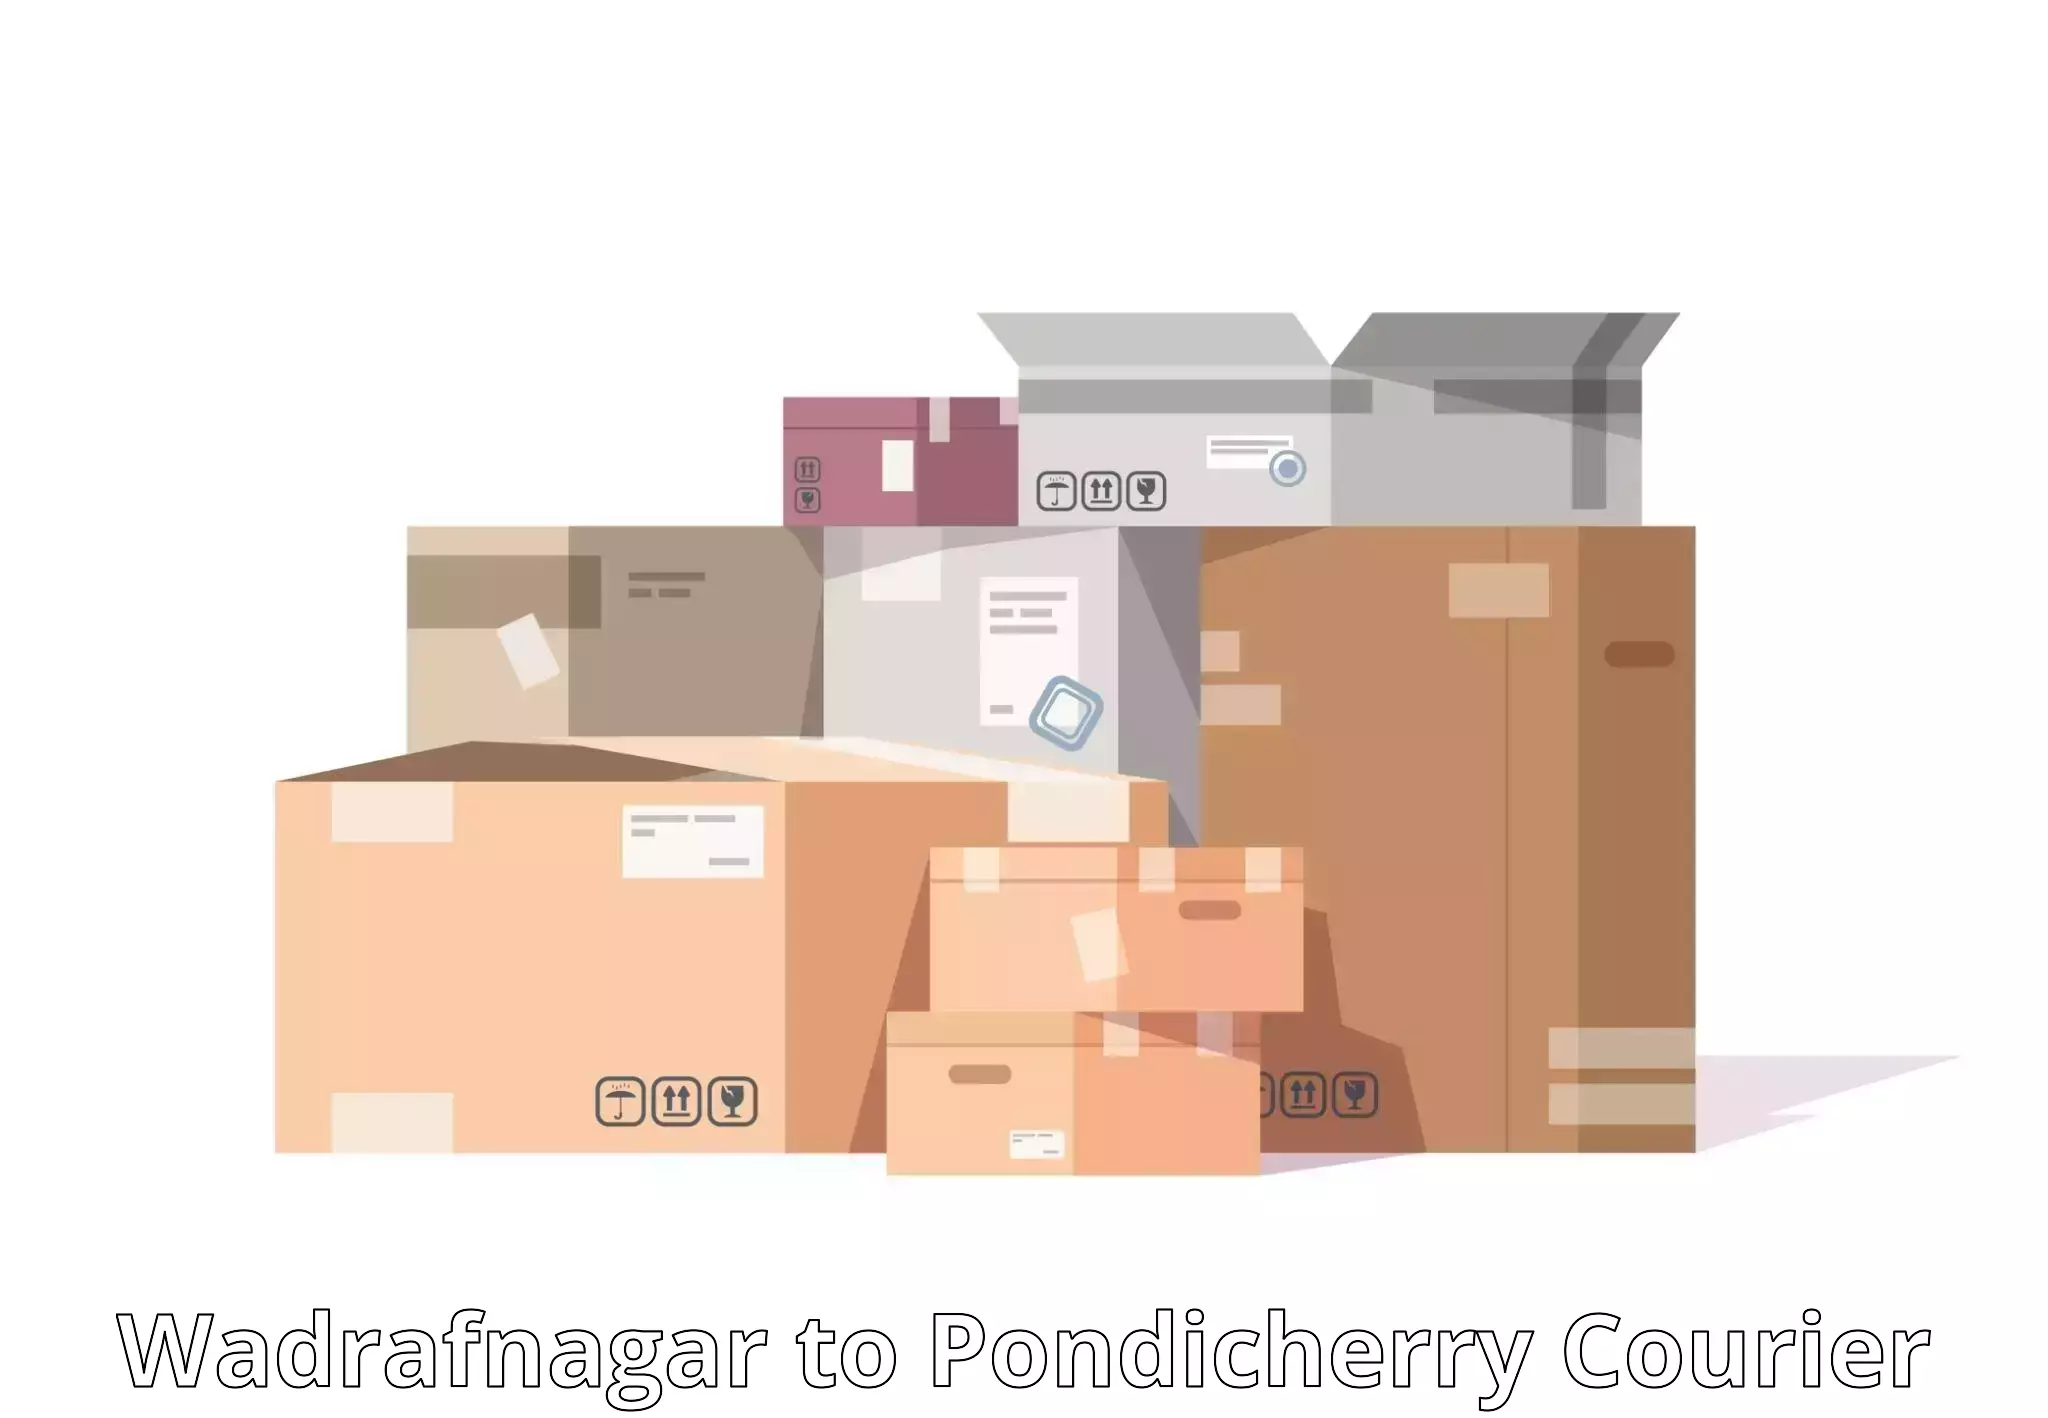 Domestic courier Wadrafnagar to Pondicherry